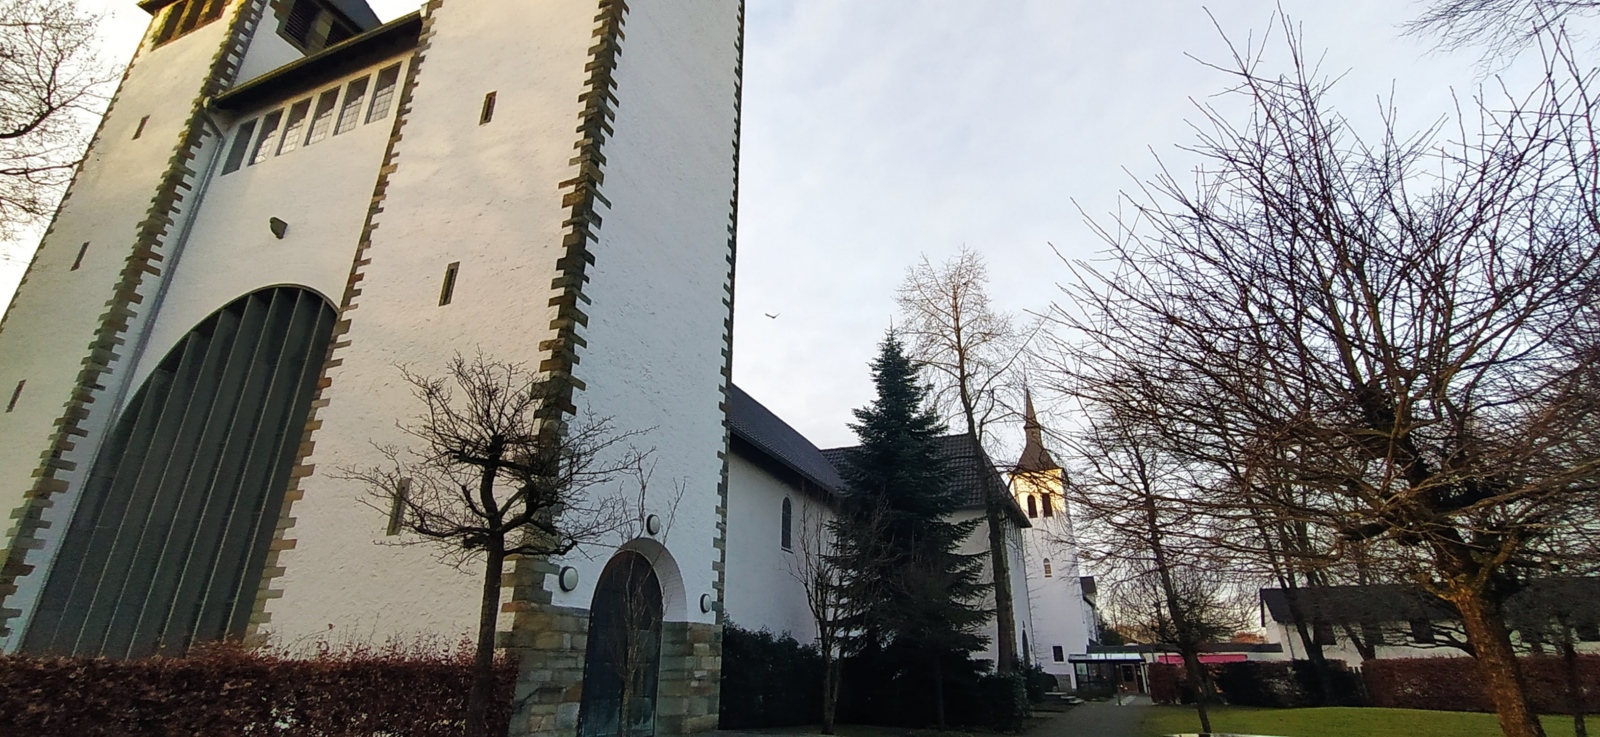 Silvester im Kloster_Gebäude2 (c) privat